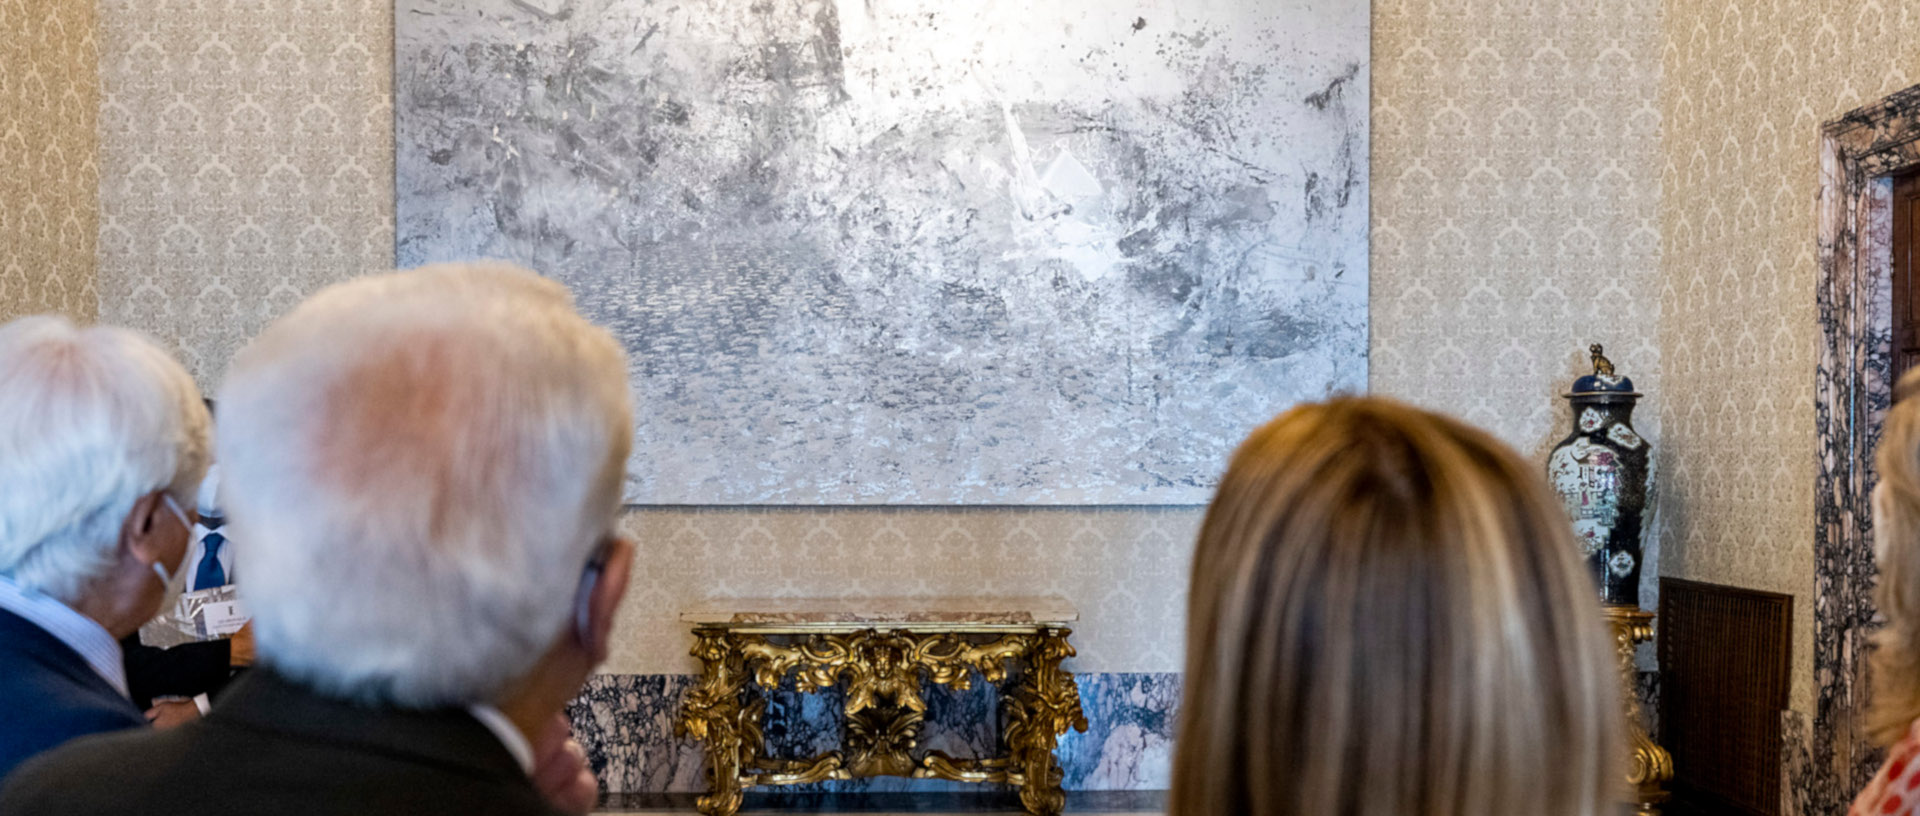 Il Presidente della Repubblica Sergio Mattarella inaugura il progetto “Quirinale contemporaneo"